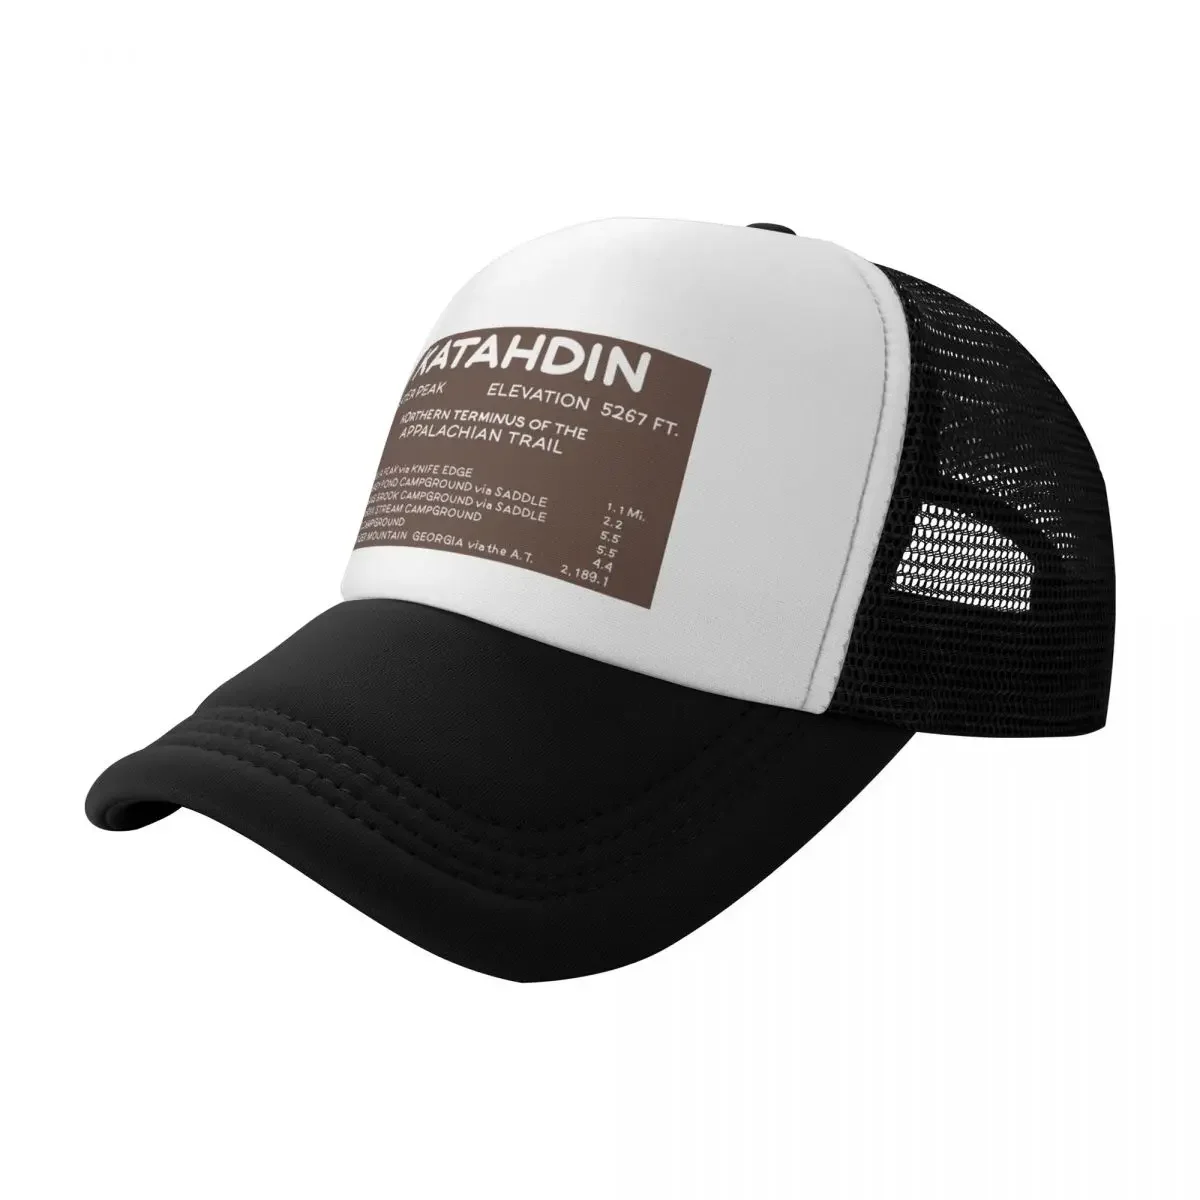 

Mount Katahdin peak sign Baseball Cap Golf Hat Beach Bobble Hat Sunscreen Trucker Hats For Men Women's